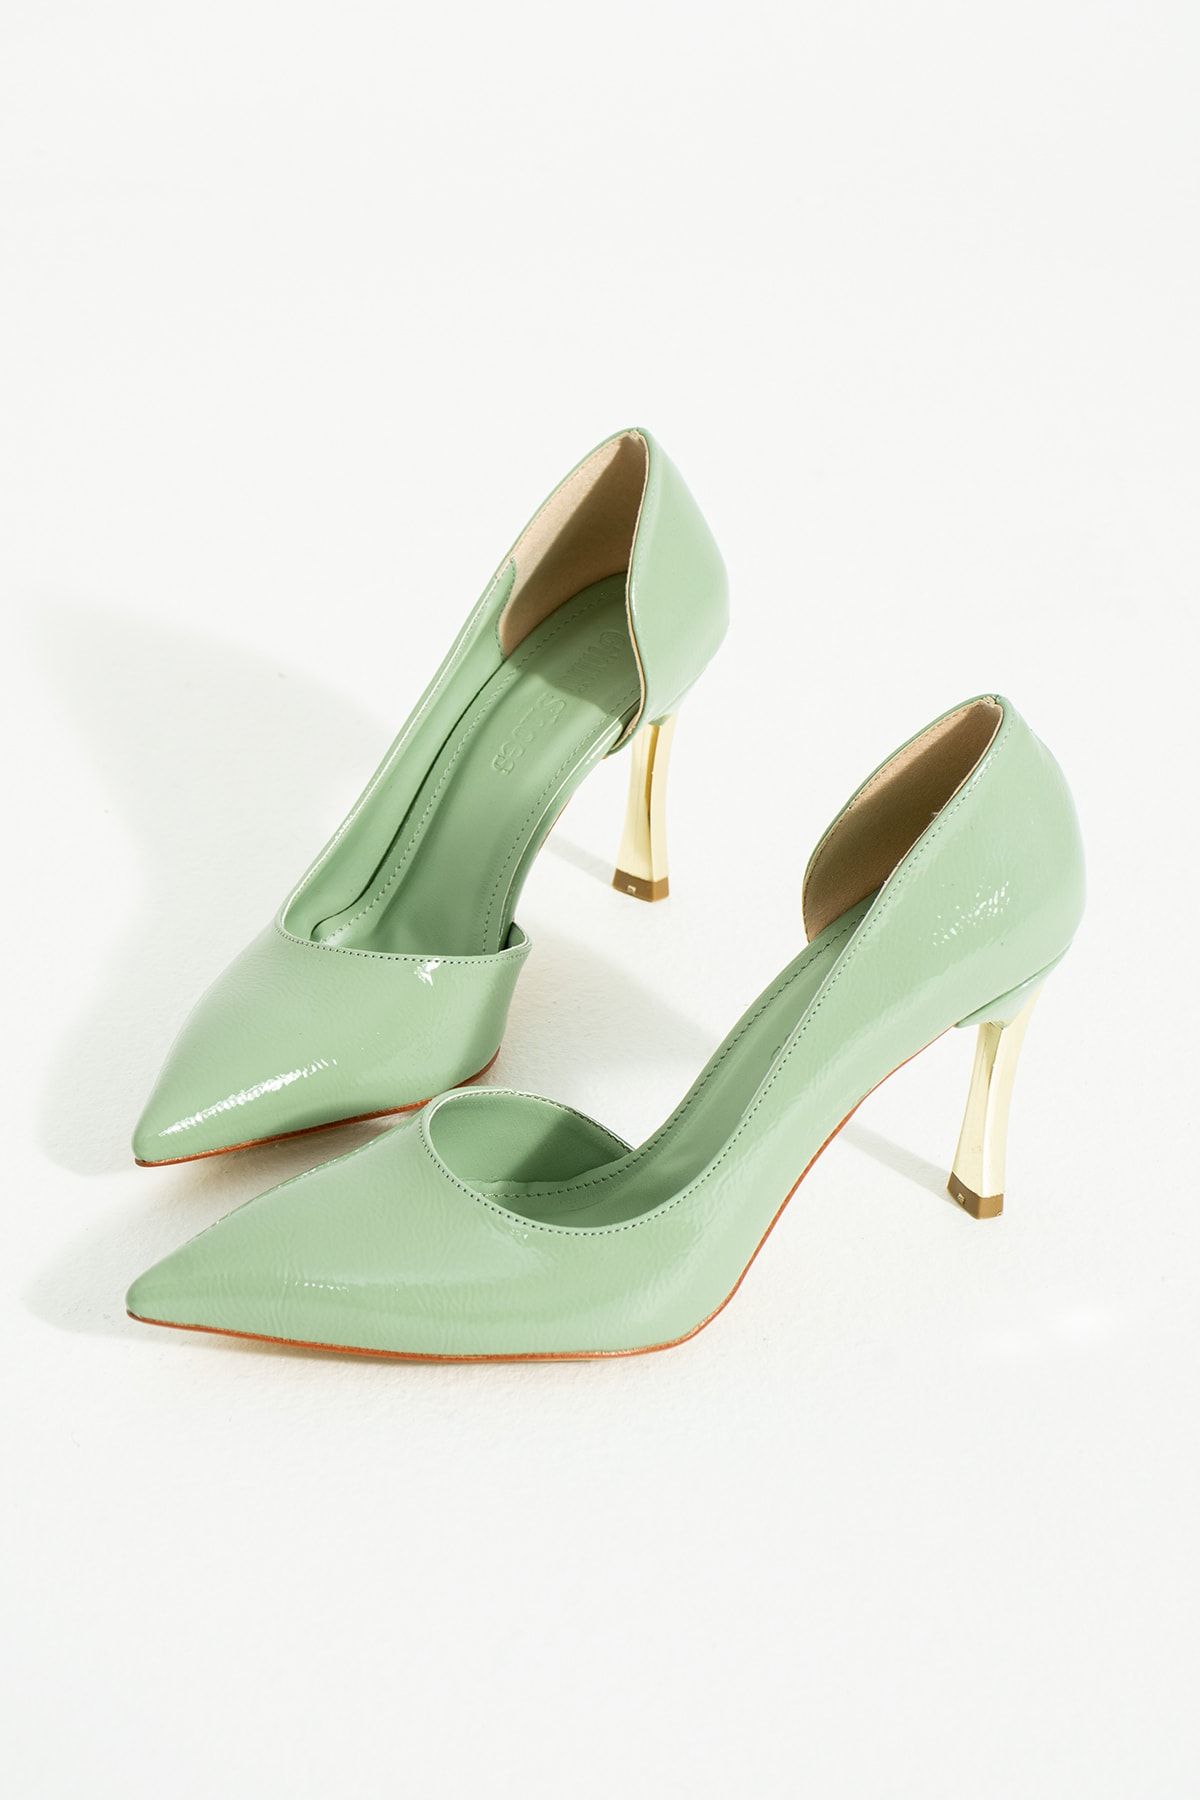 Güllü Shoes Kadın Topuklu Ayakkabı - Yüksek Topuklu Stiletto Rahat Şık Ve Ince Iş Ayakkabısı Açık Yeşil 9 Cm